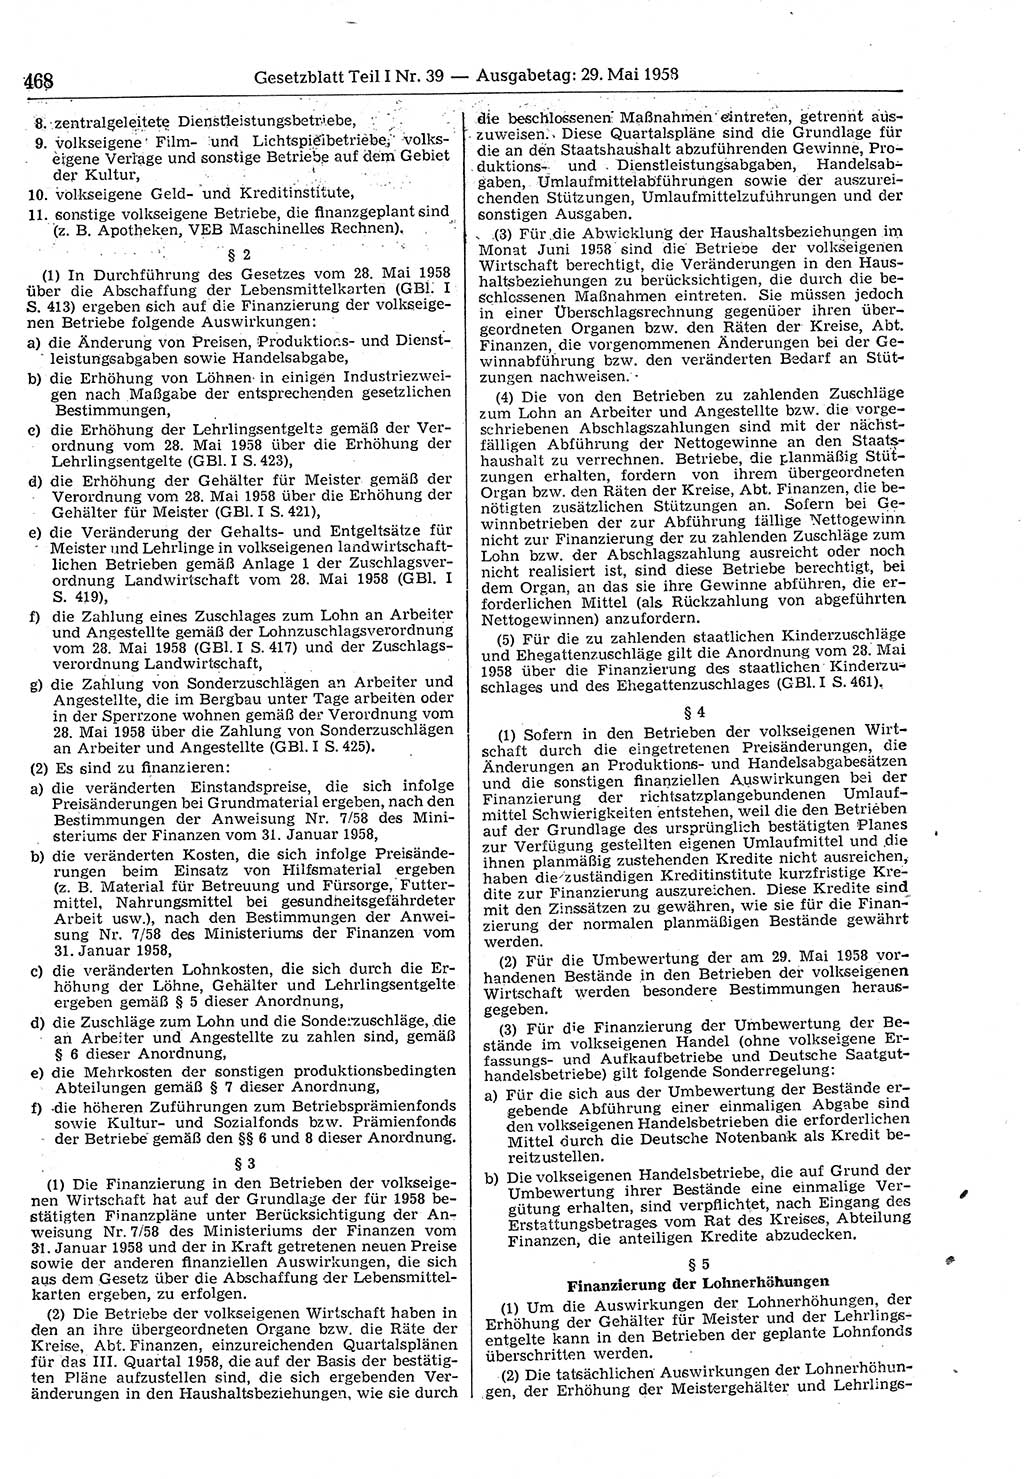 Gesetzblatt (GBl.) der Deutschen Demokratischen Republik (DDR) Teil Ⅰ 1958, Seite 468 (GBl. DDR Ⅰ 1958, S. 468)